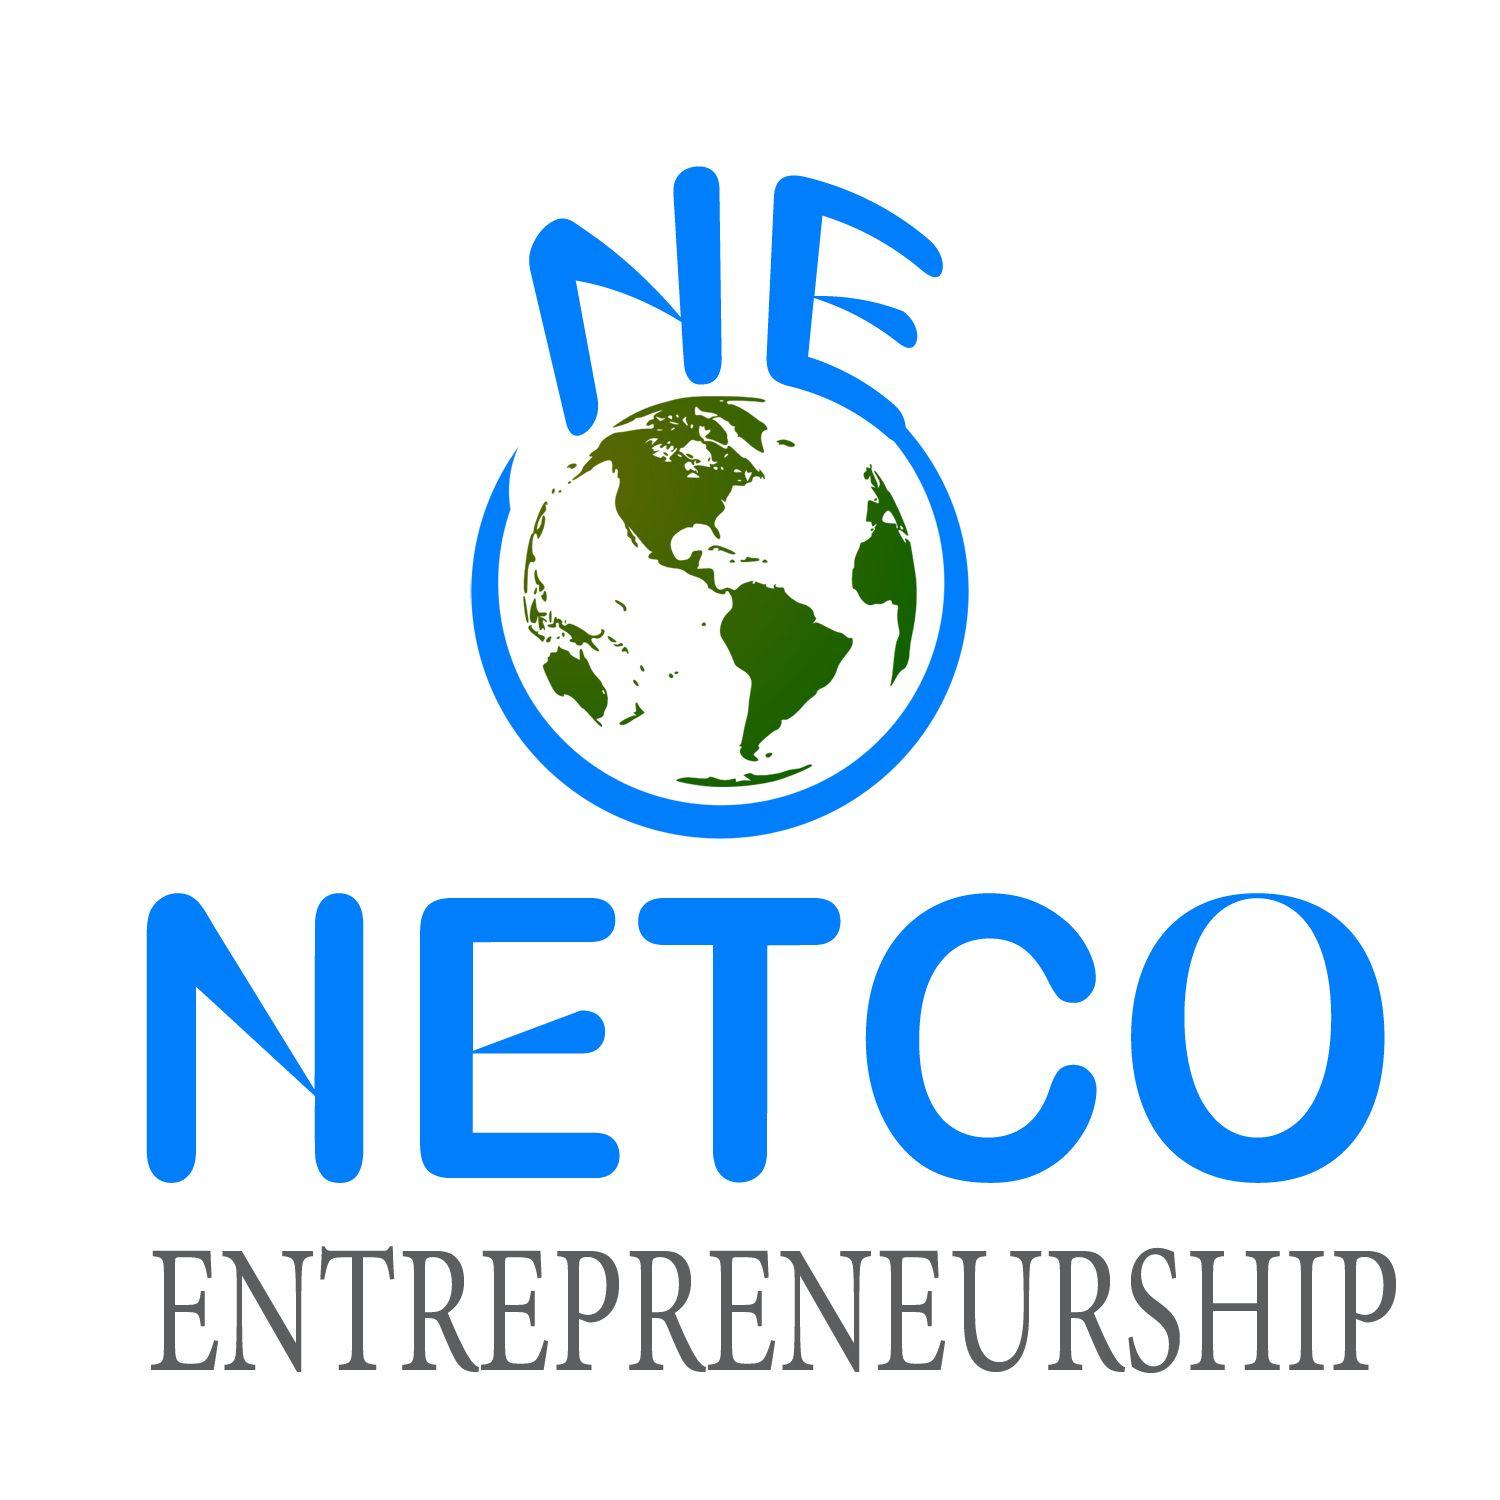 NE Logo - Bold, Feminine, Business Consultant Logo Design for Netco